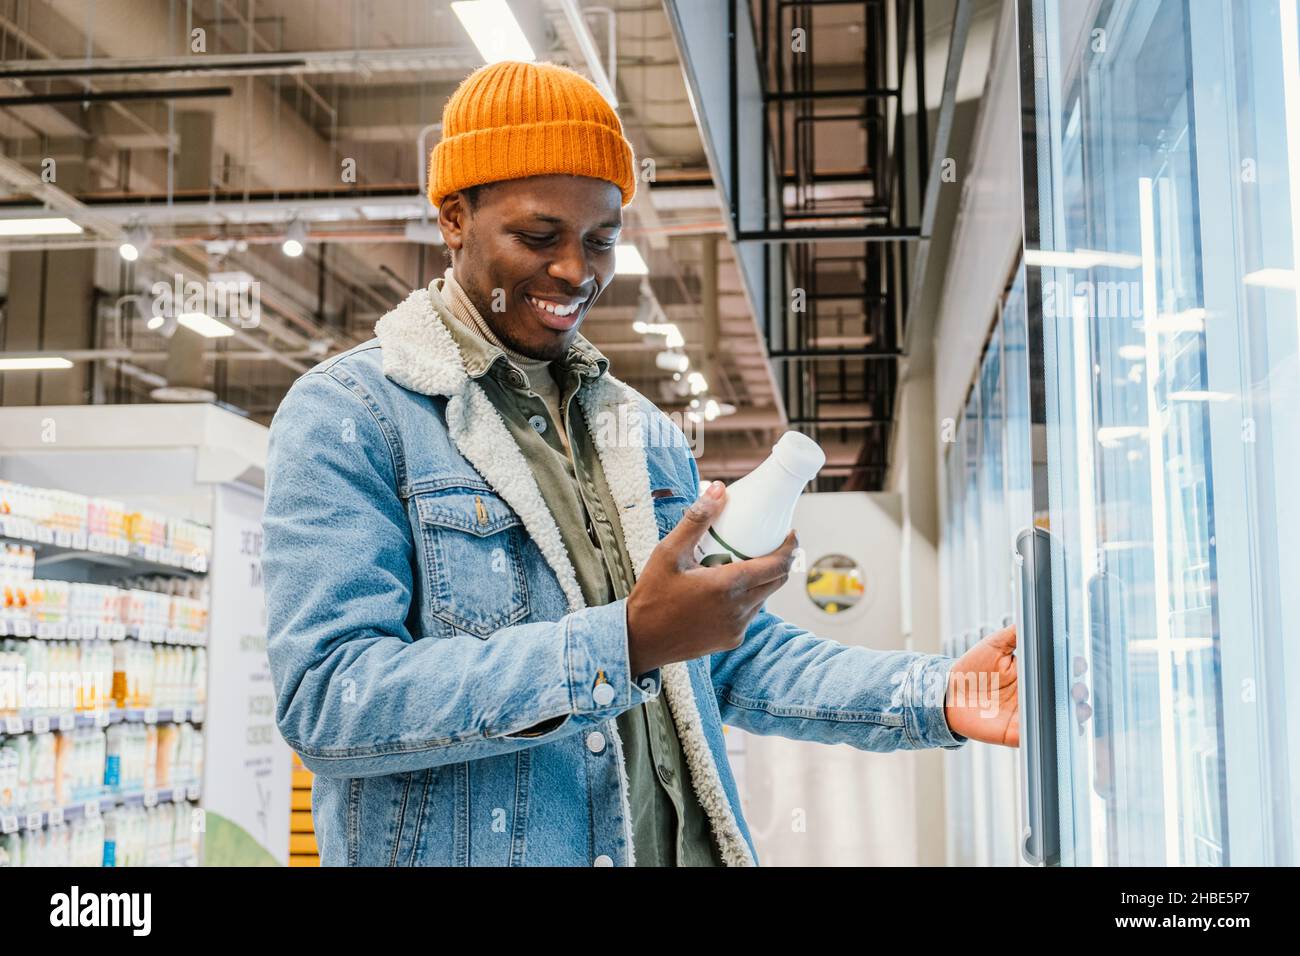 El hombre del milenio africano satisfecho en un sombrero de naranja en un supermercado elige la leche embotellada de pie en el refrigerador, y lee la composición del producto, sonrisas encontró el producto derecho Foto de stock